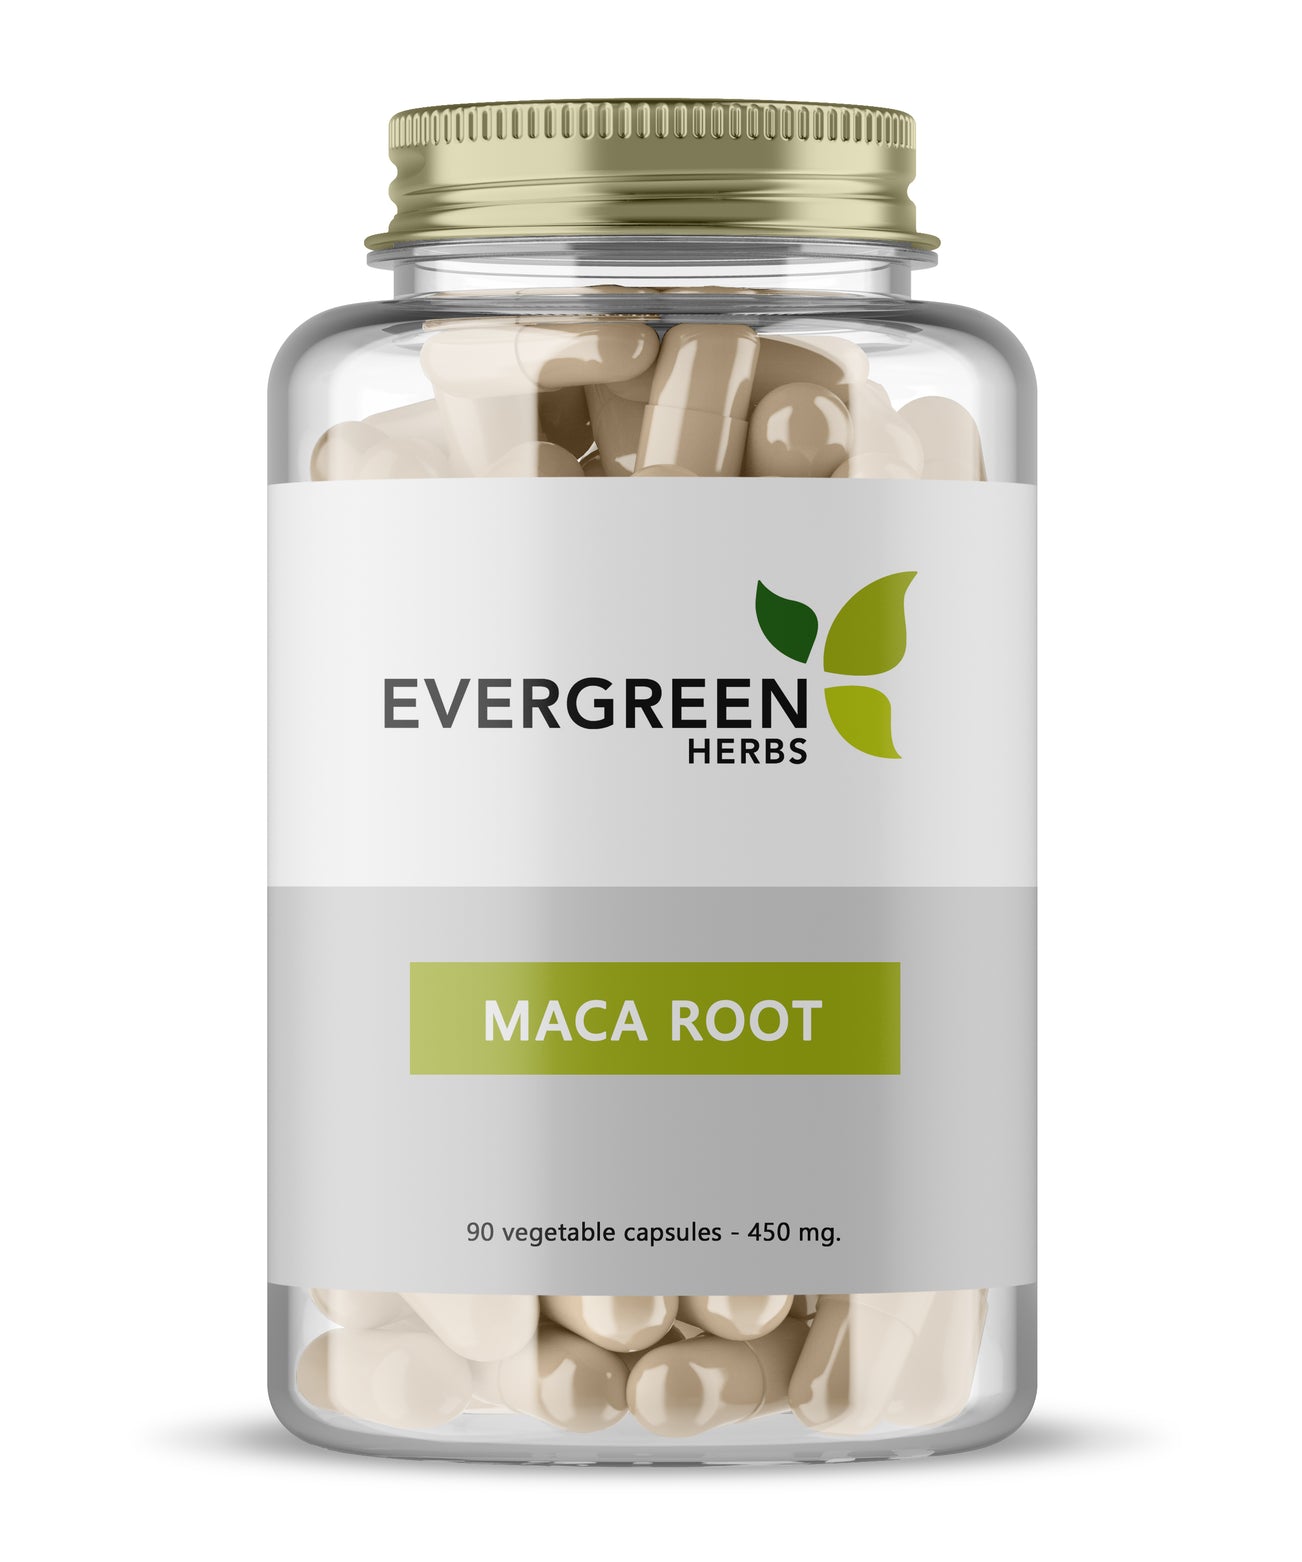 Maca Root Capsules - 90 Capsules (450 mg.)